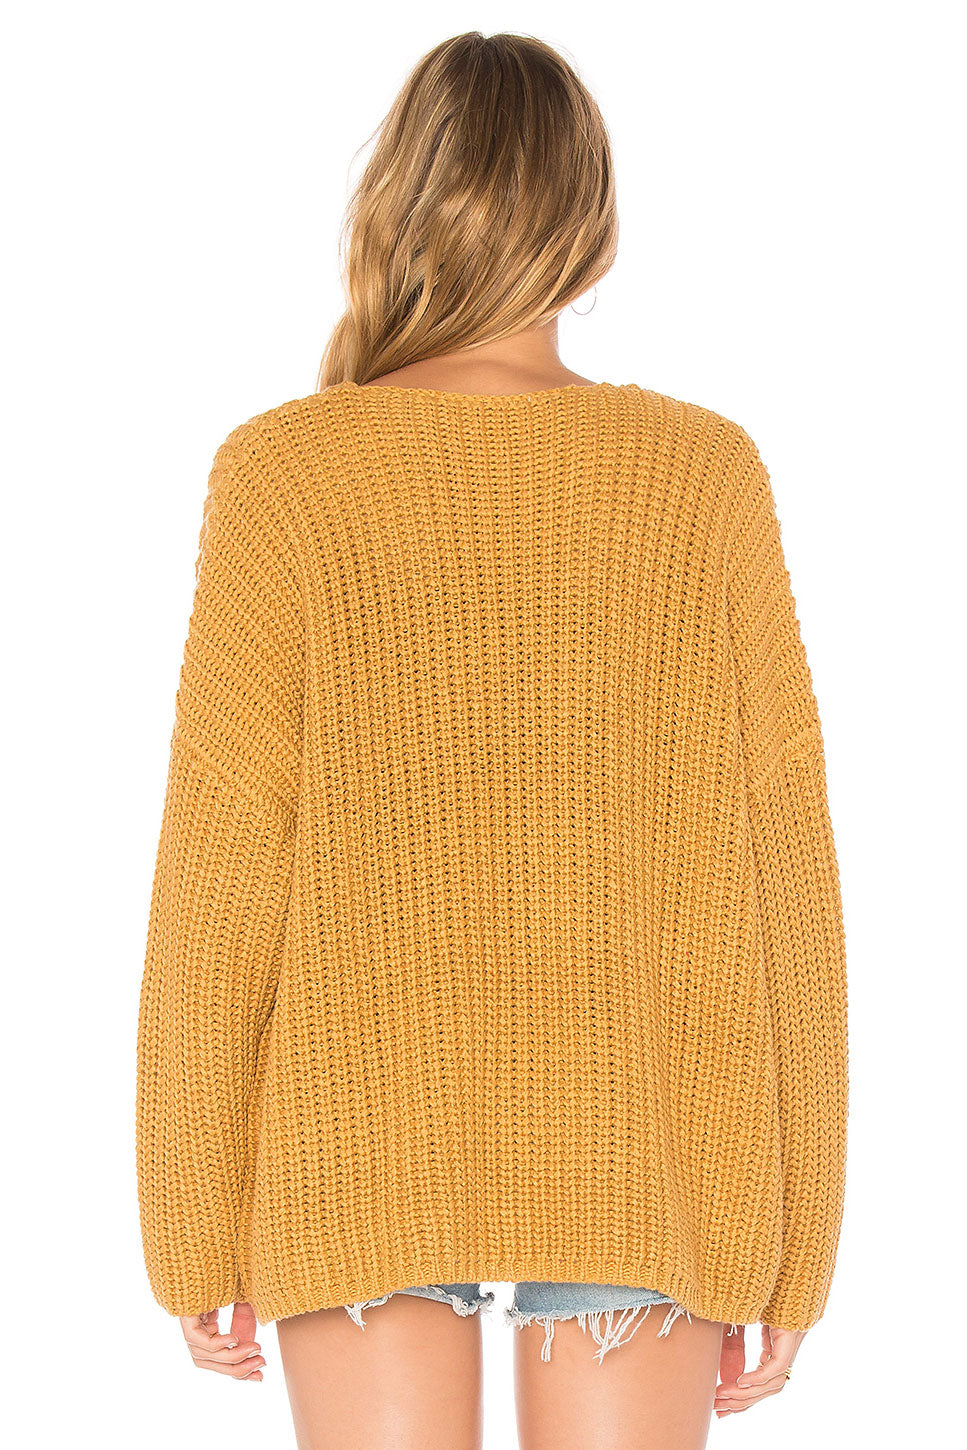 Adams Sweater in MUSTARD/OCHRE